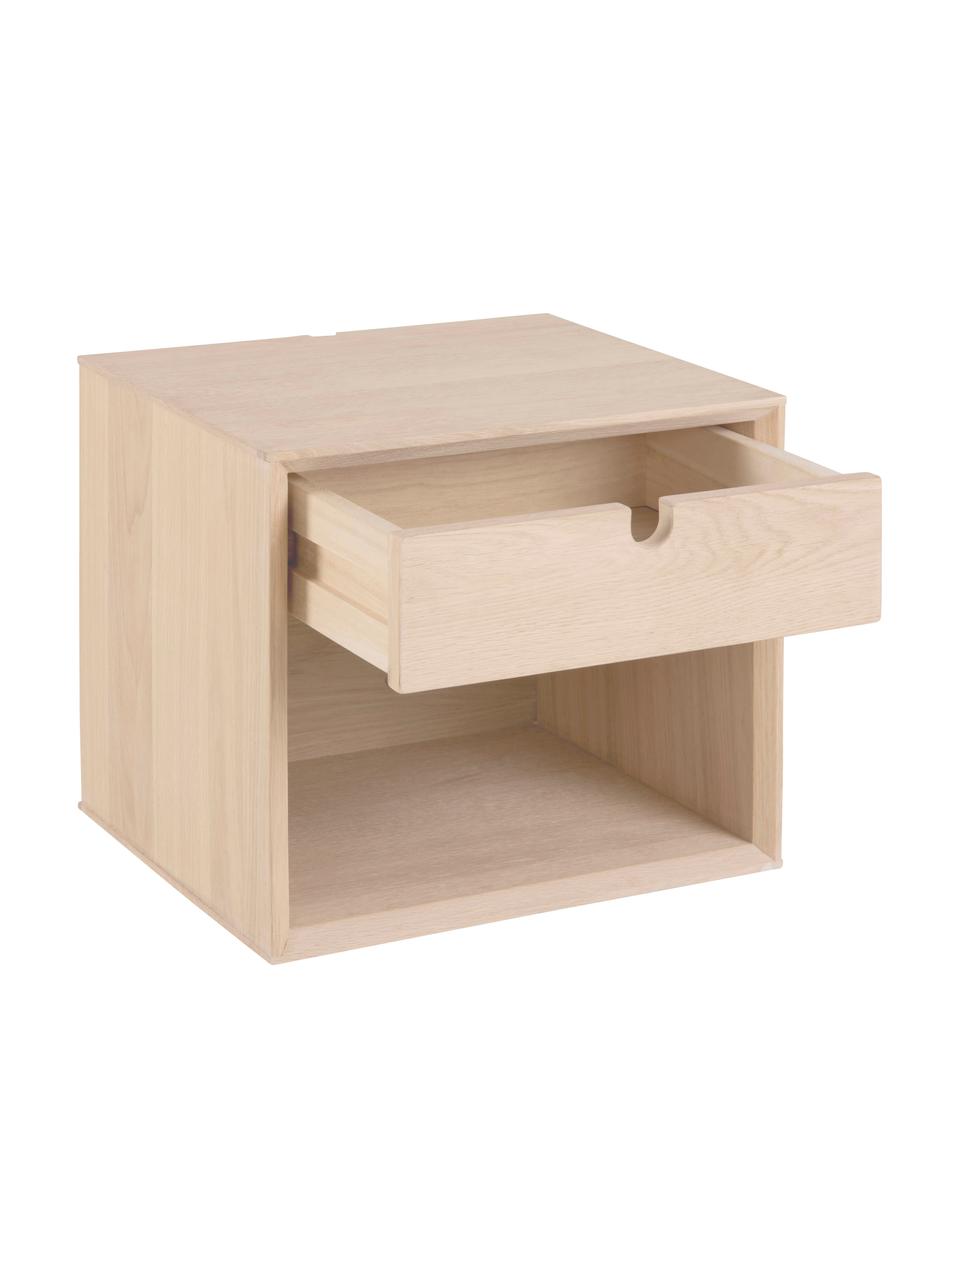 Dřevěný nástěnný noční stolek Century, Dřevotřísková deska, MDF deska (dřevovláknitá deska střední hustoty) s dubovou dýhou, Světle hnědá, Š 37 cm, V 33 cm